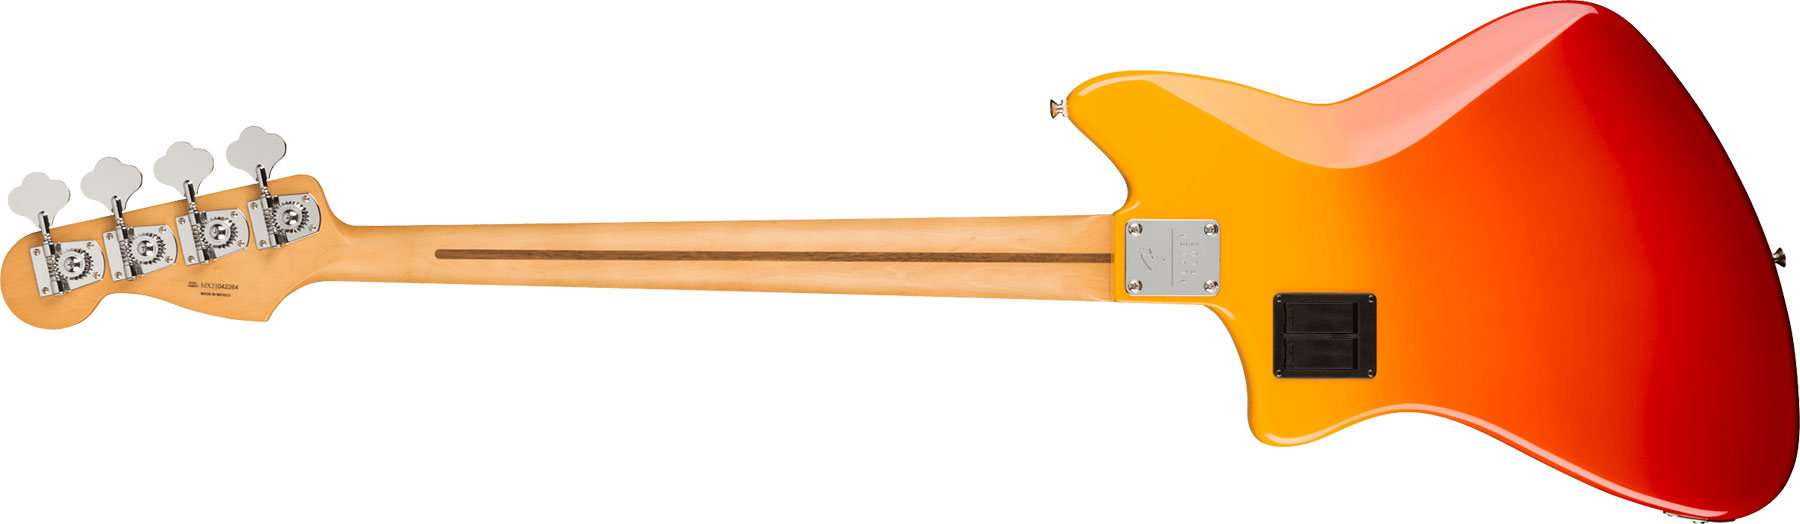 Fender Meteora Bass Active Player Plus Mex Pf - Tequila Sunrise - Solid body elektrische bas - Variation 1